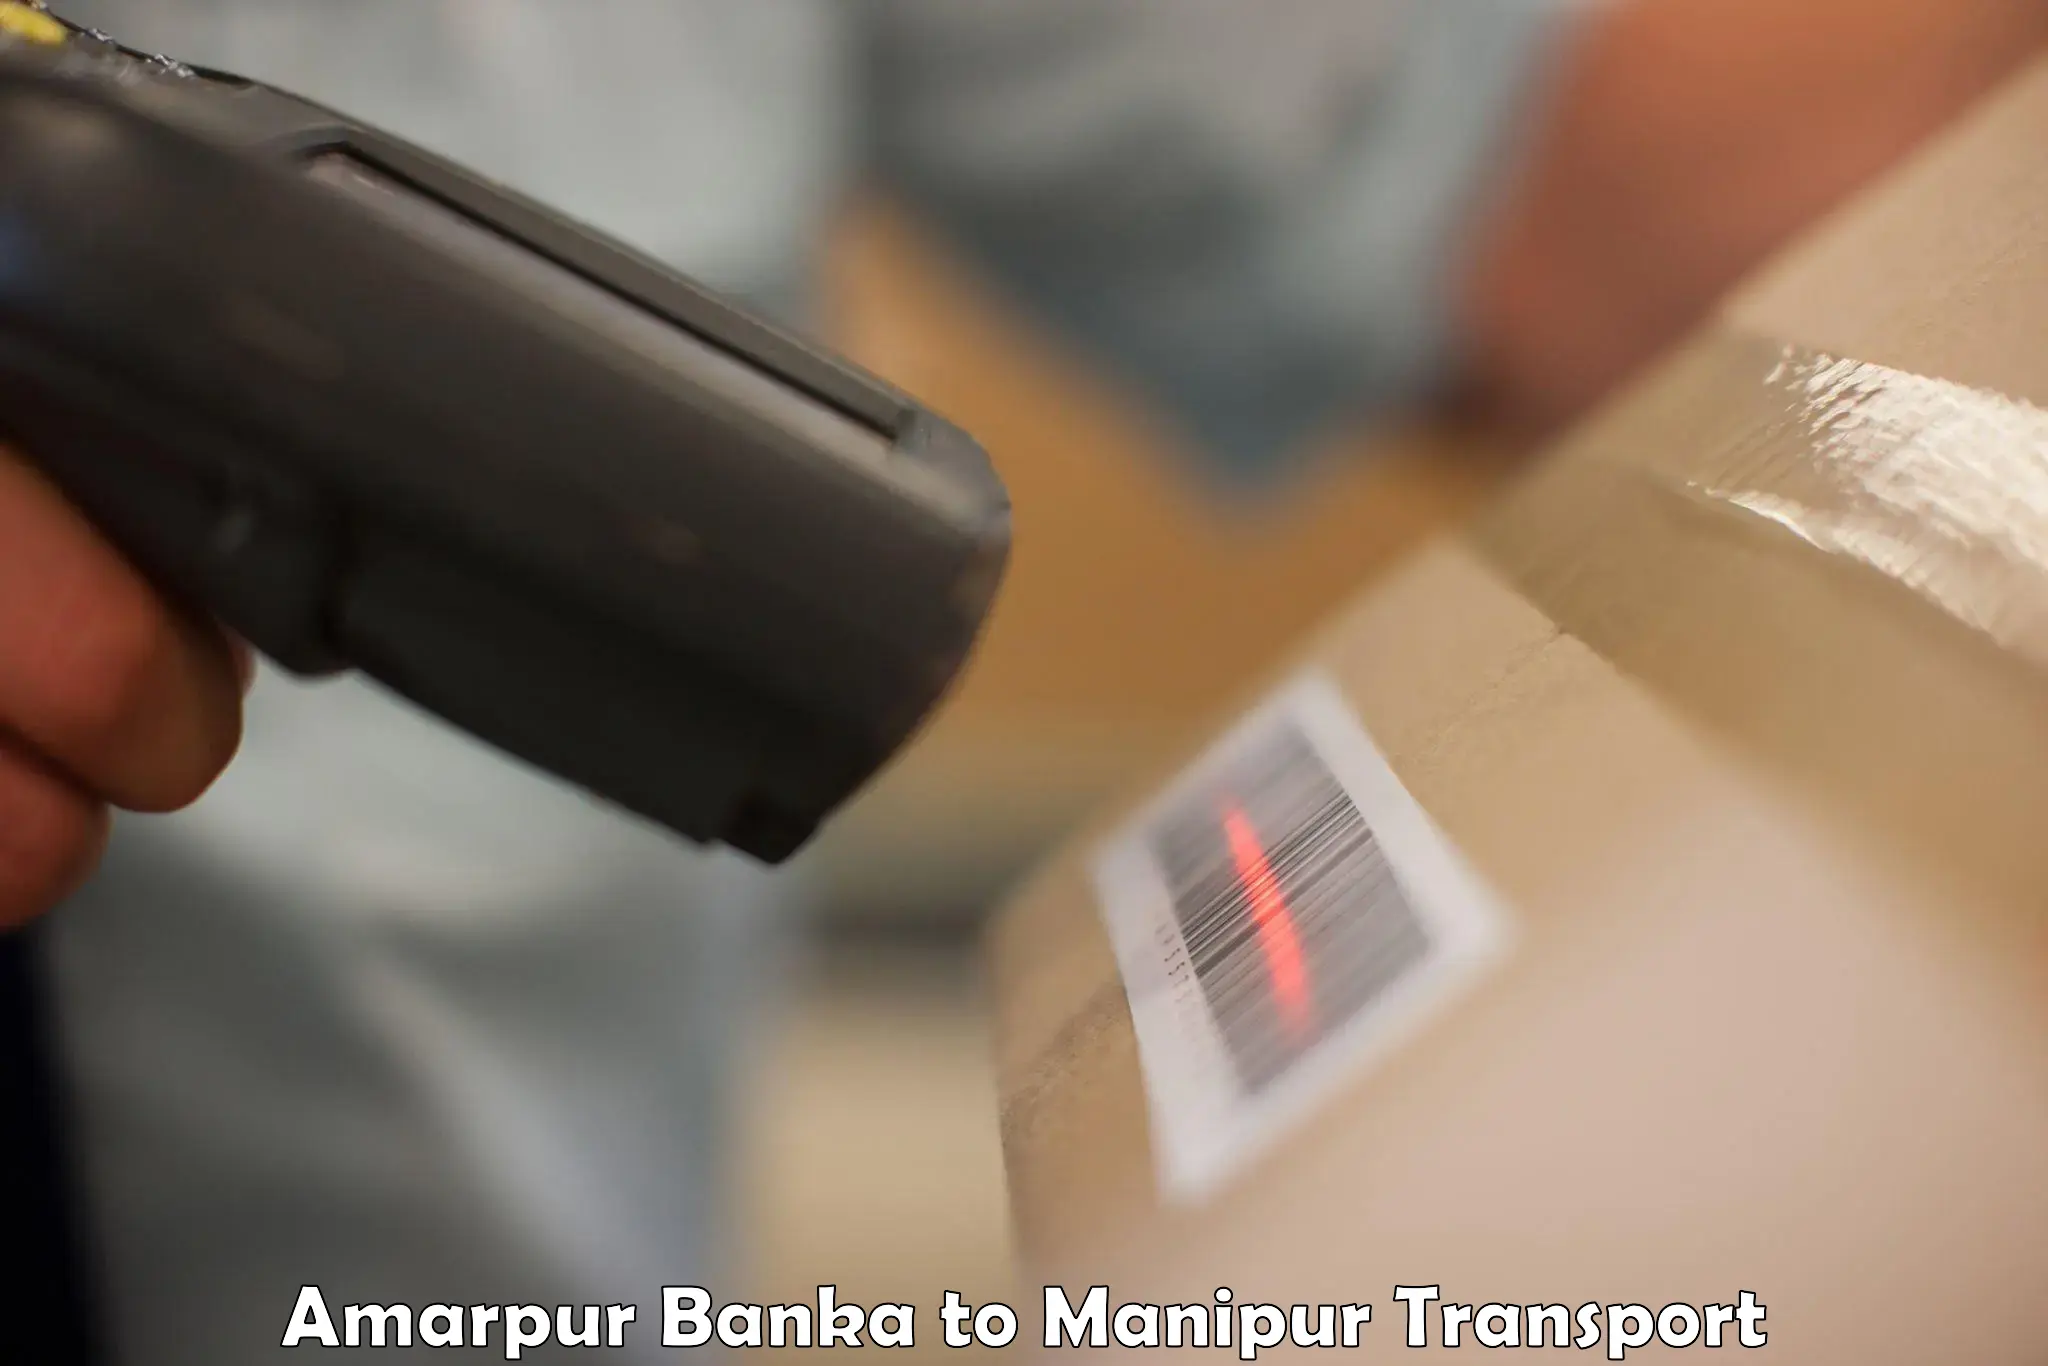 Furniture transport service Amarpur Banka to Moirang